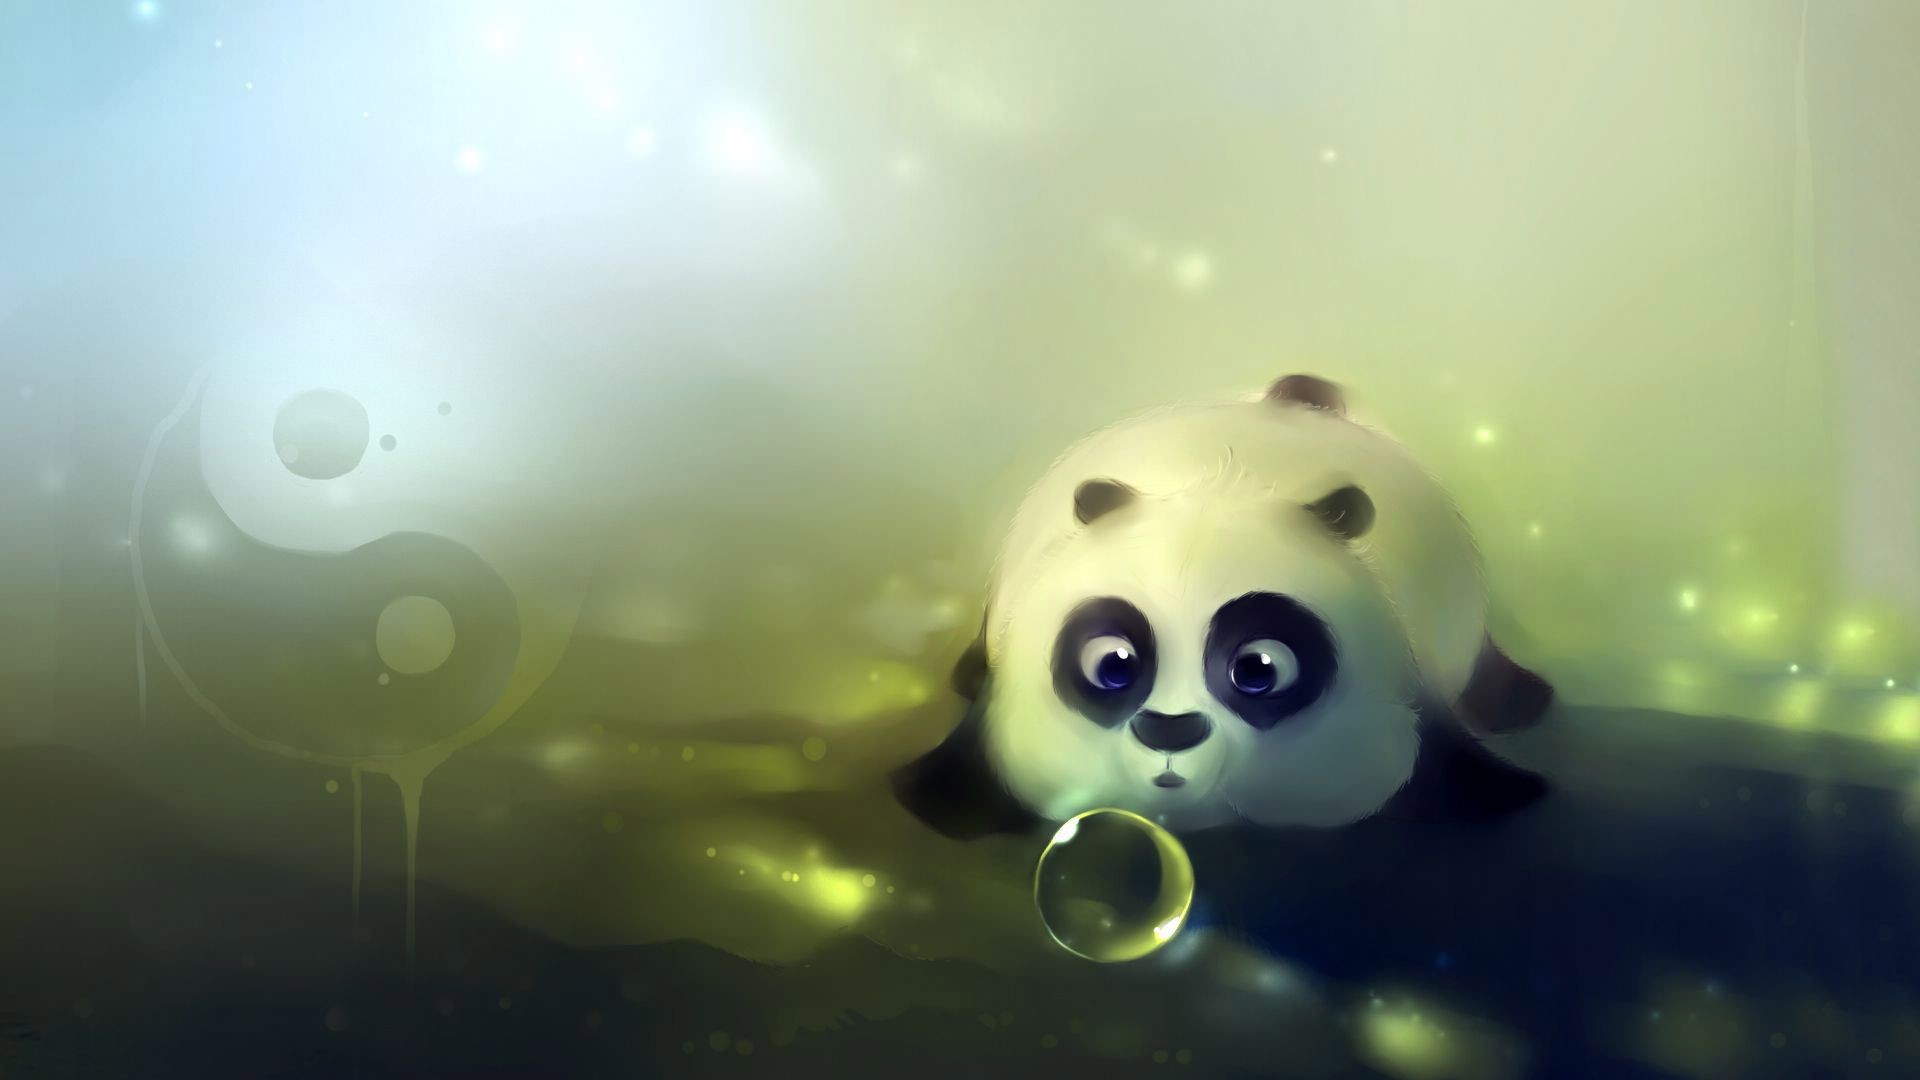 Cute Baby Panda Wallpaper1920 1080 1920x1080